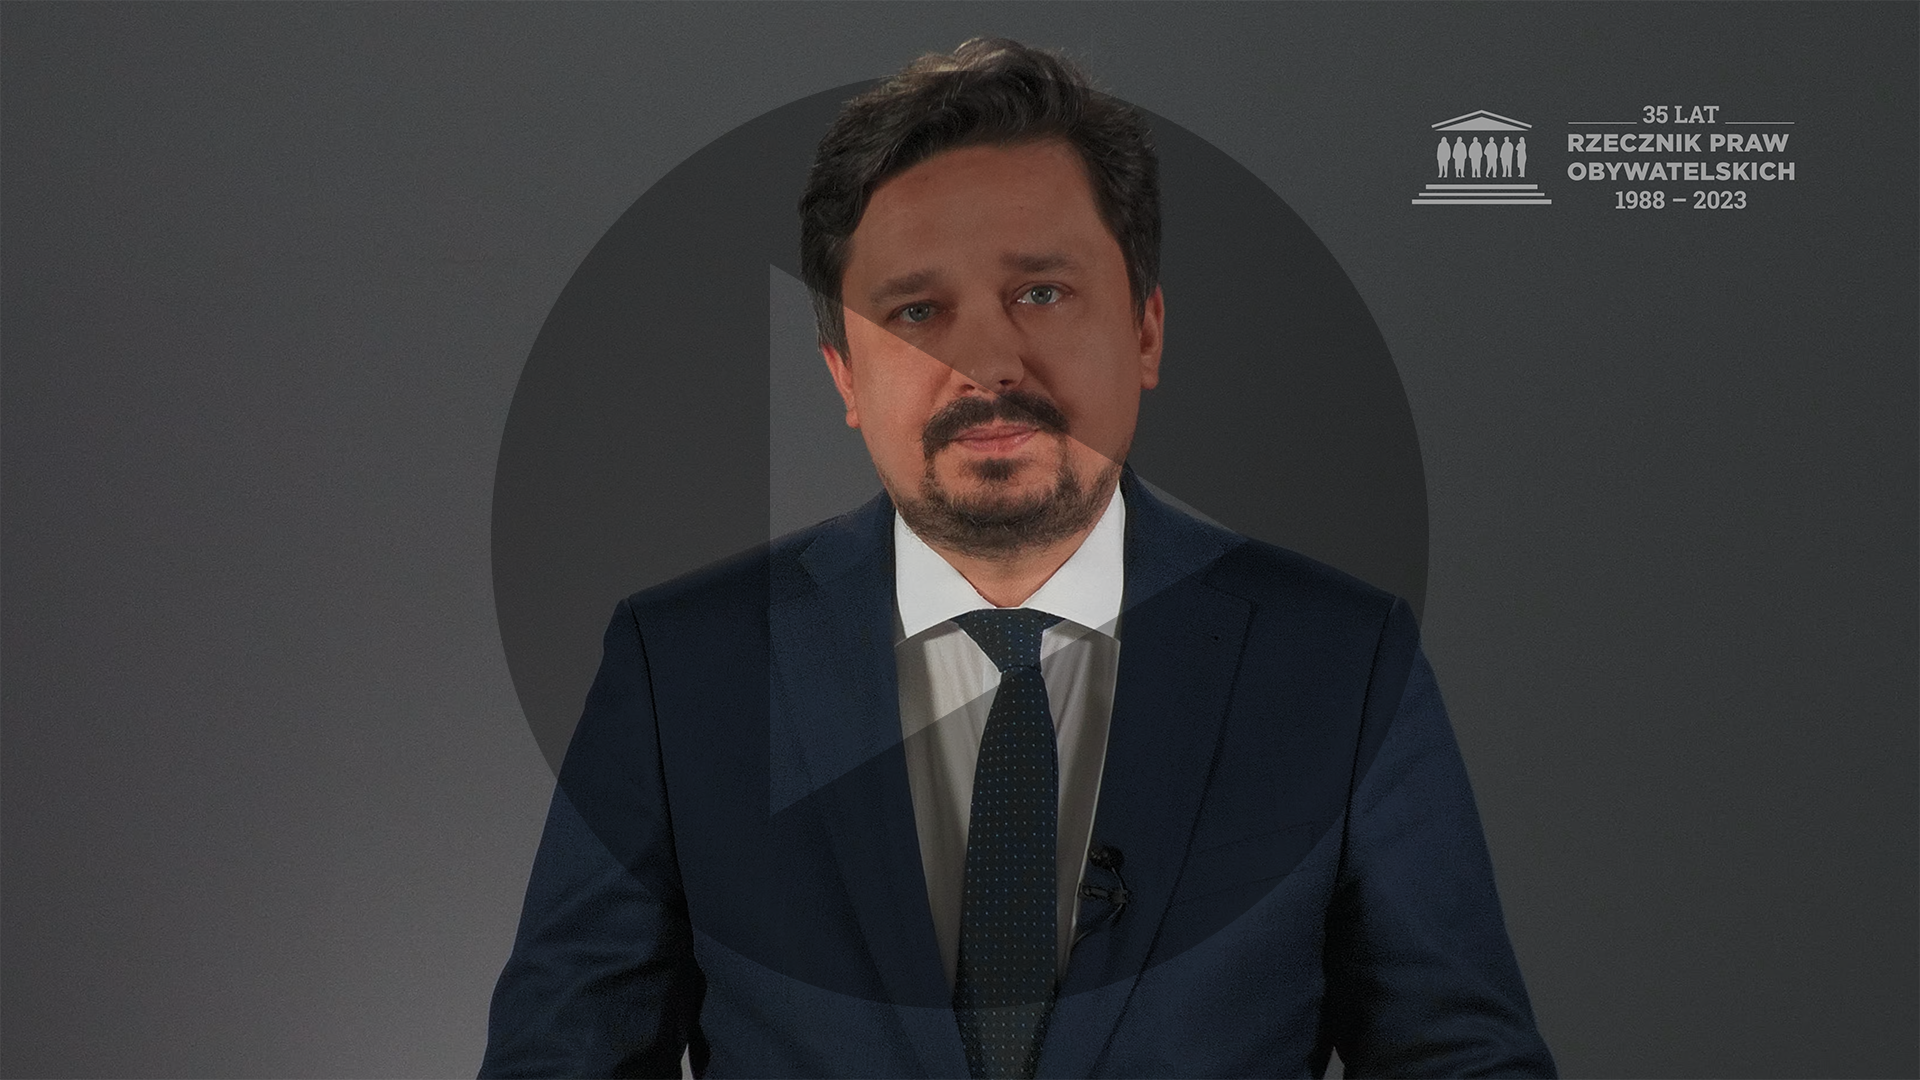 Kadr z nagrania przedstawiający RPO Marcina Wiącka z naniesionym symbolem odtwarzania wideo